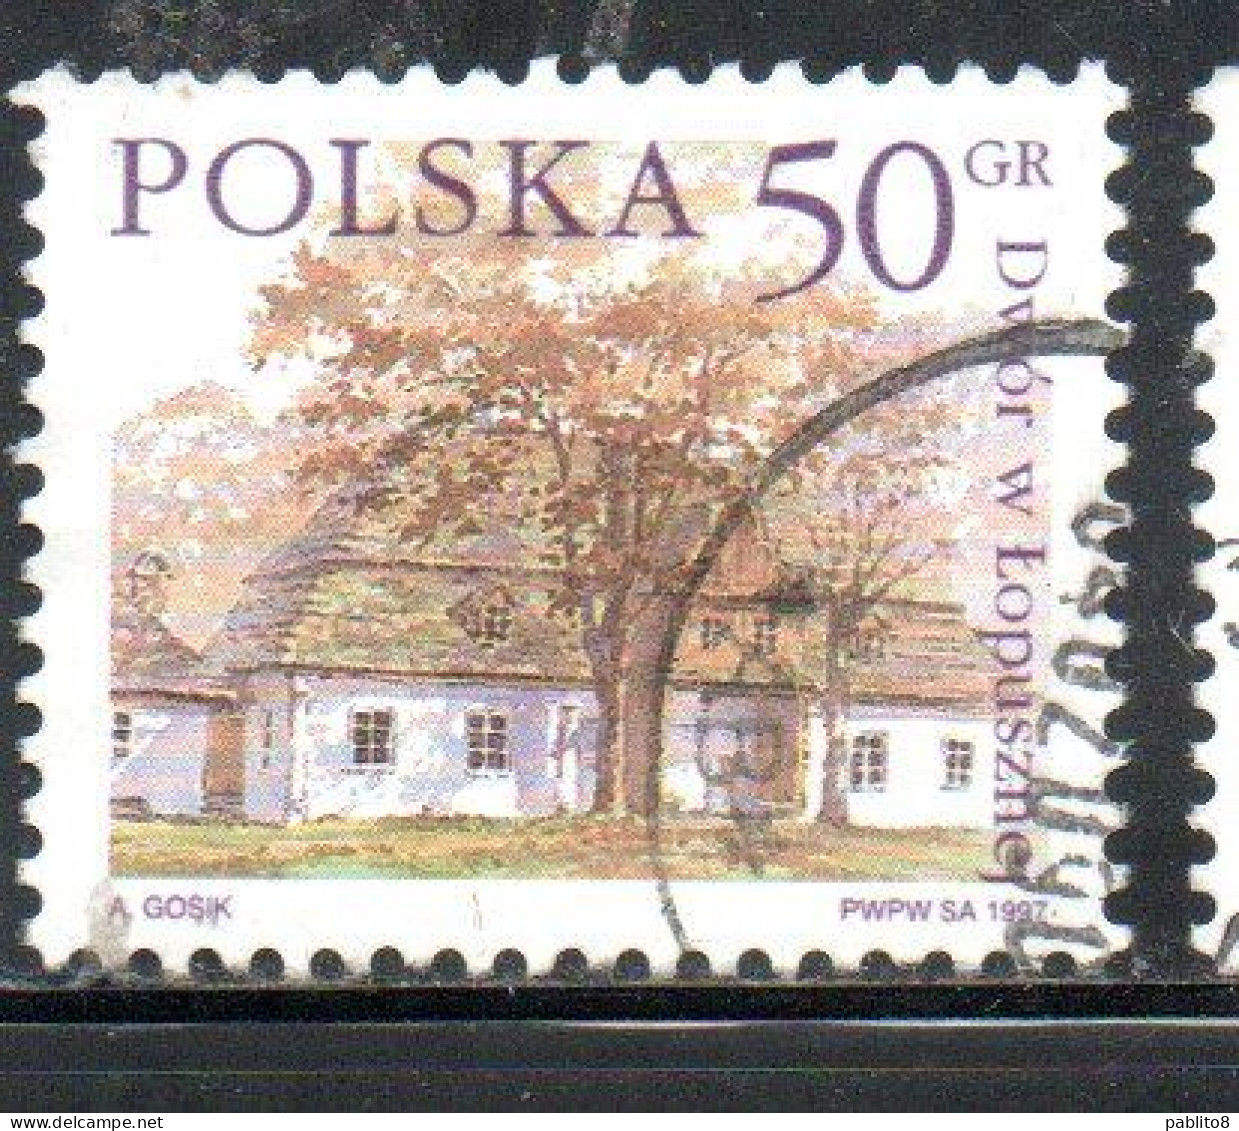 POLONIA POLAND POLSKA 1997 COUNTRY ESTATES LOPUSZNEJ 50g USED USATO OBLITERE' - Gebraucht